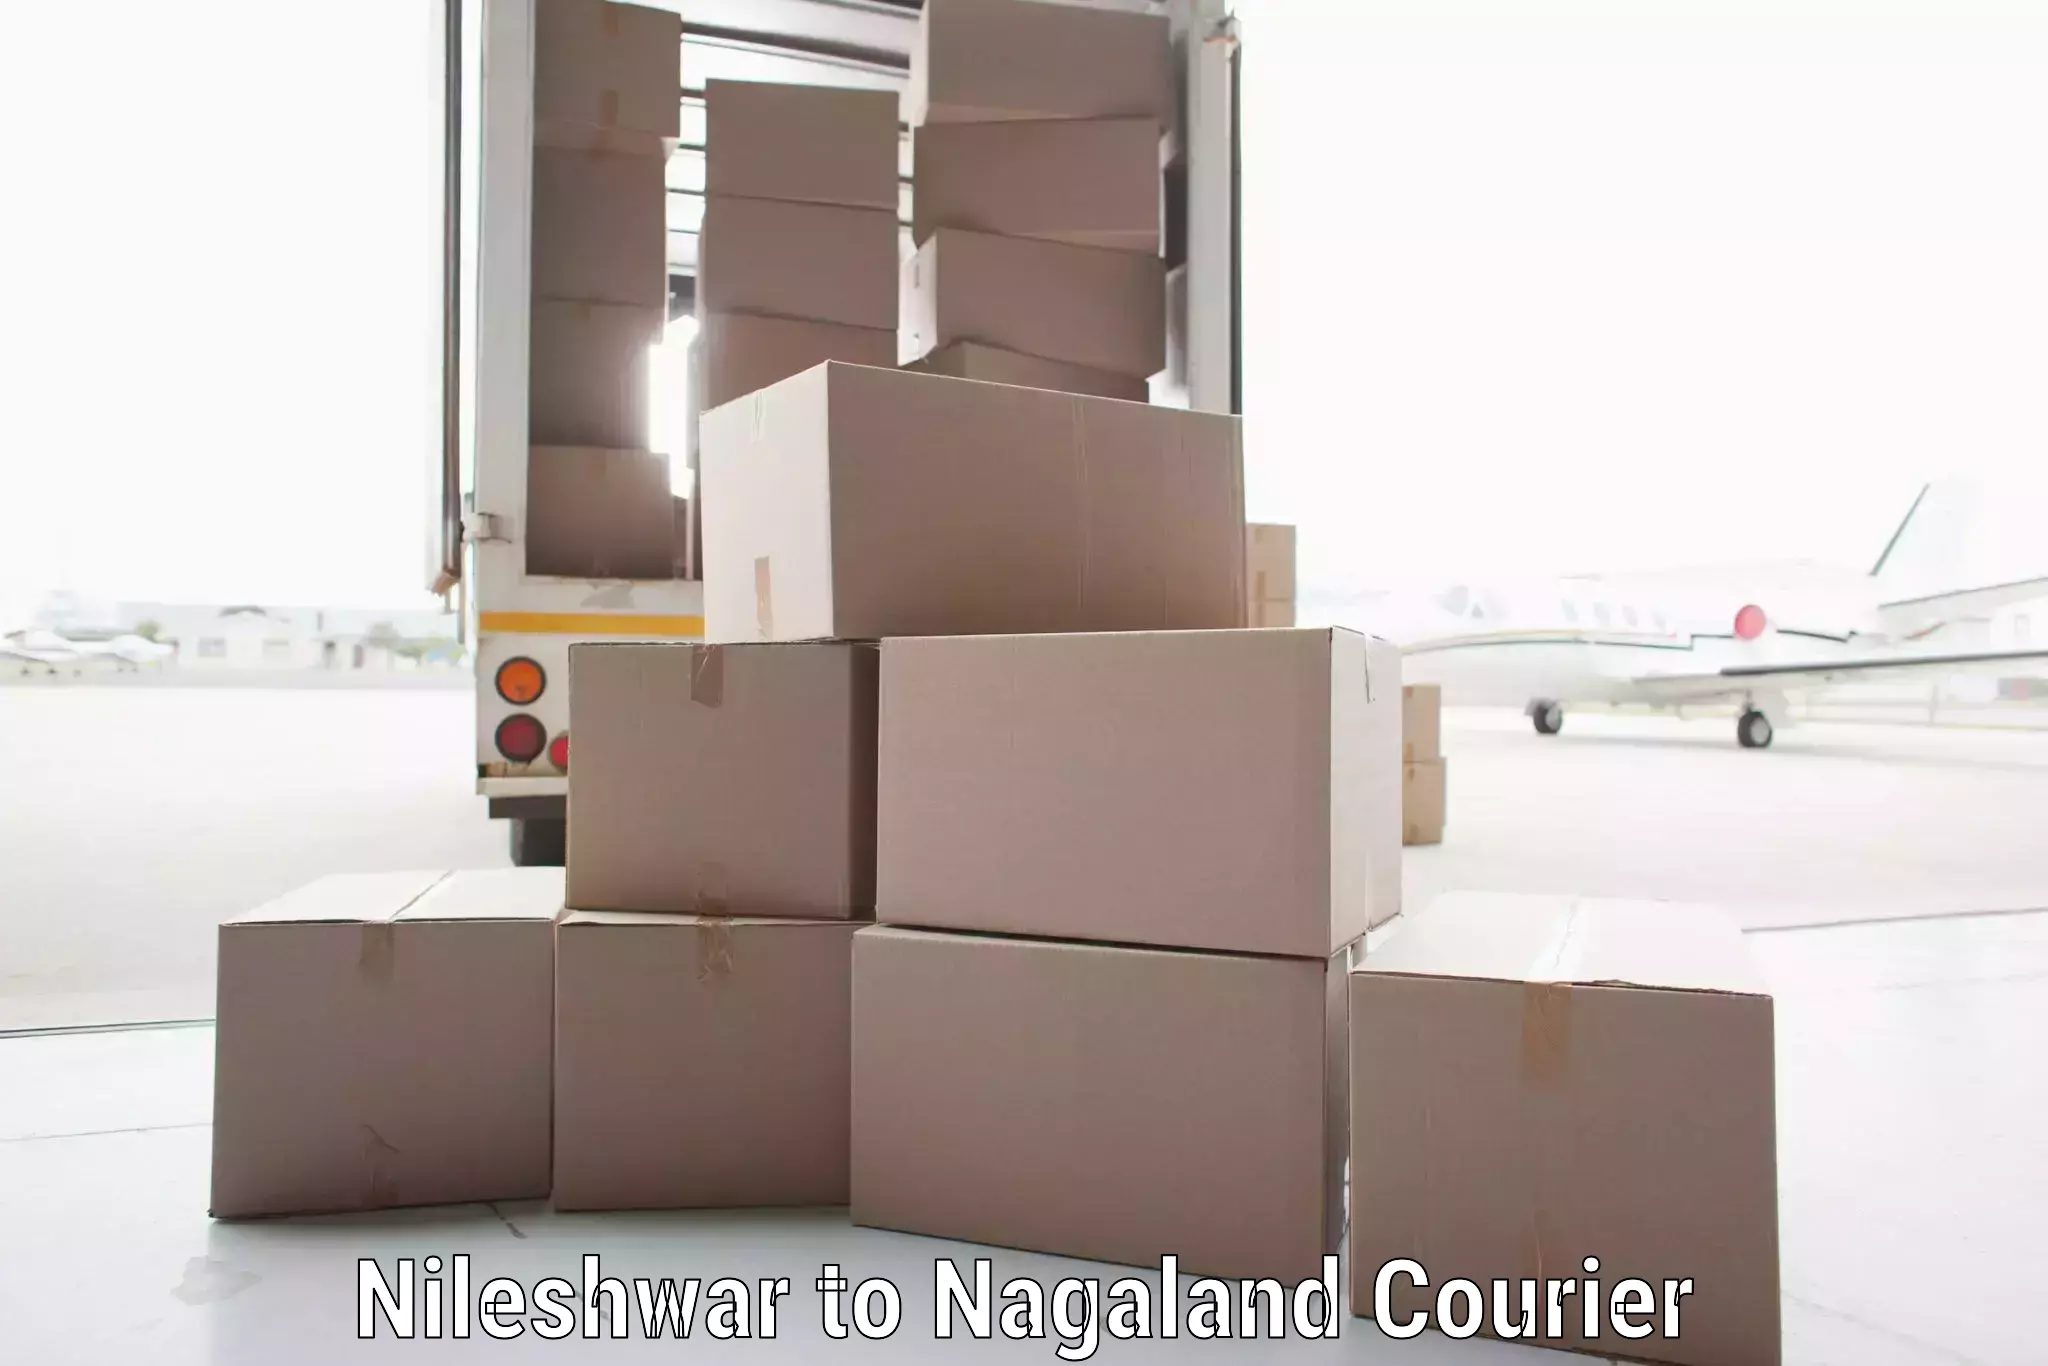 Global parcel delivery Nileshwar to NIT Nagaland